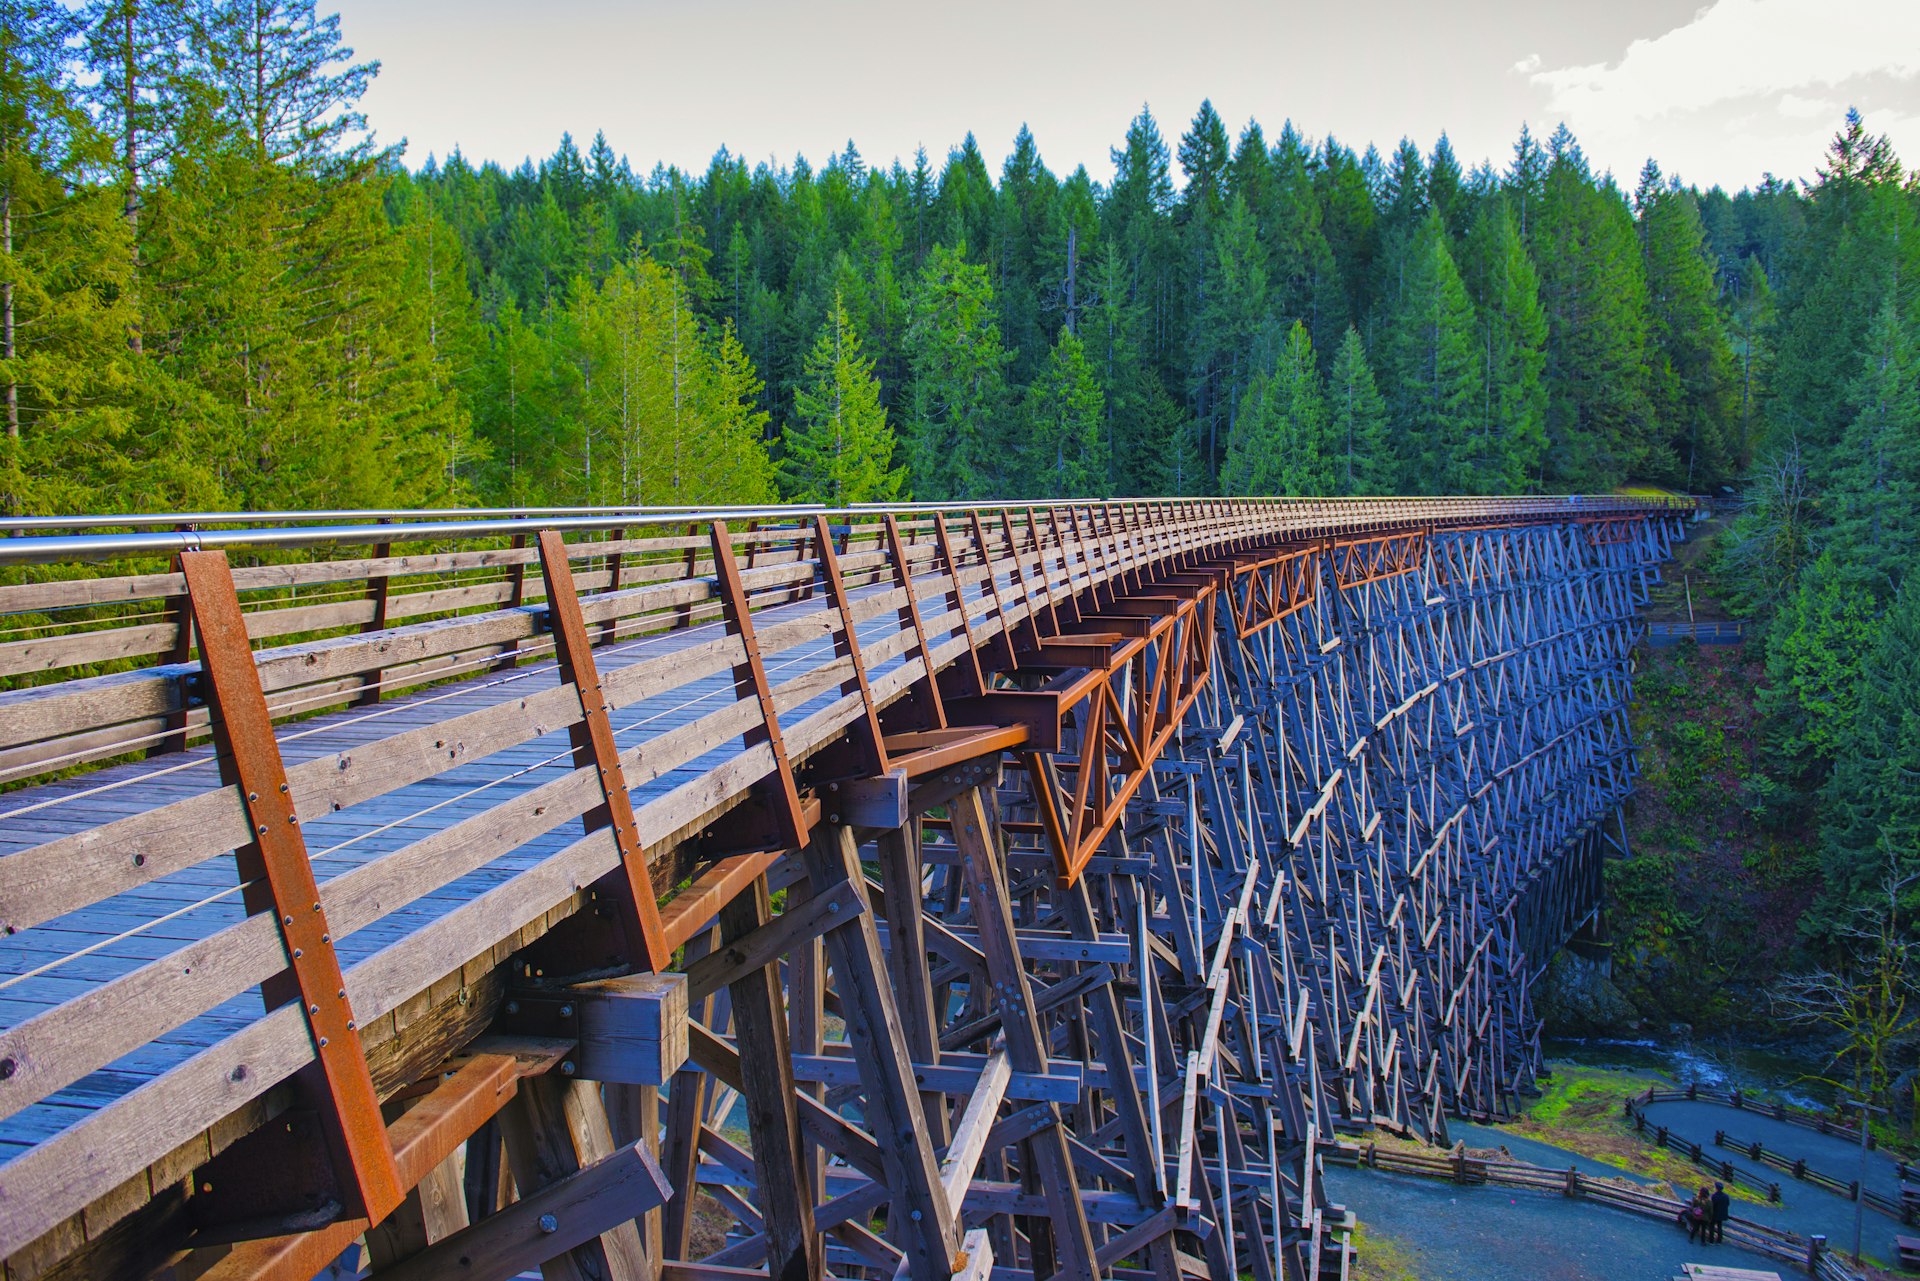 a wooden railroad bridge in Vancouver Island, BC Canada.